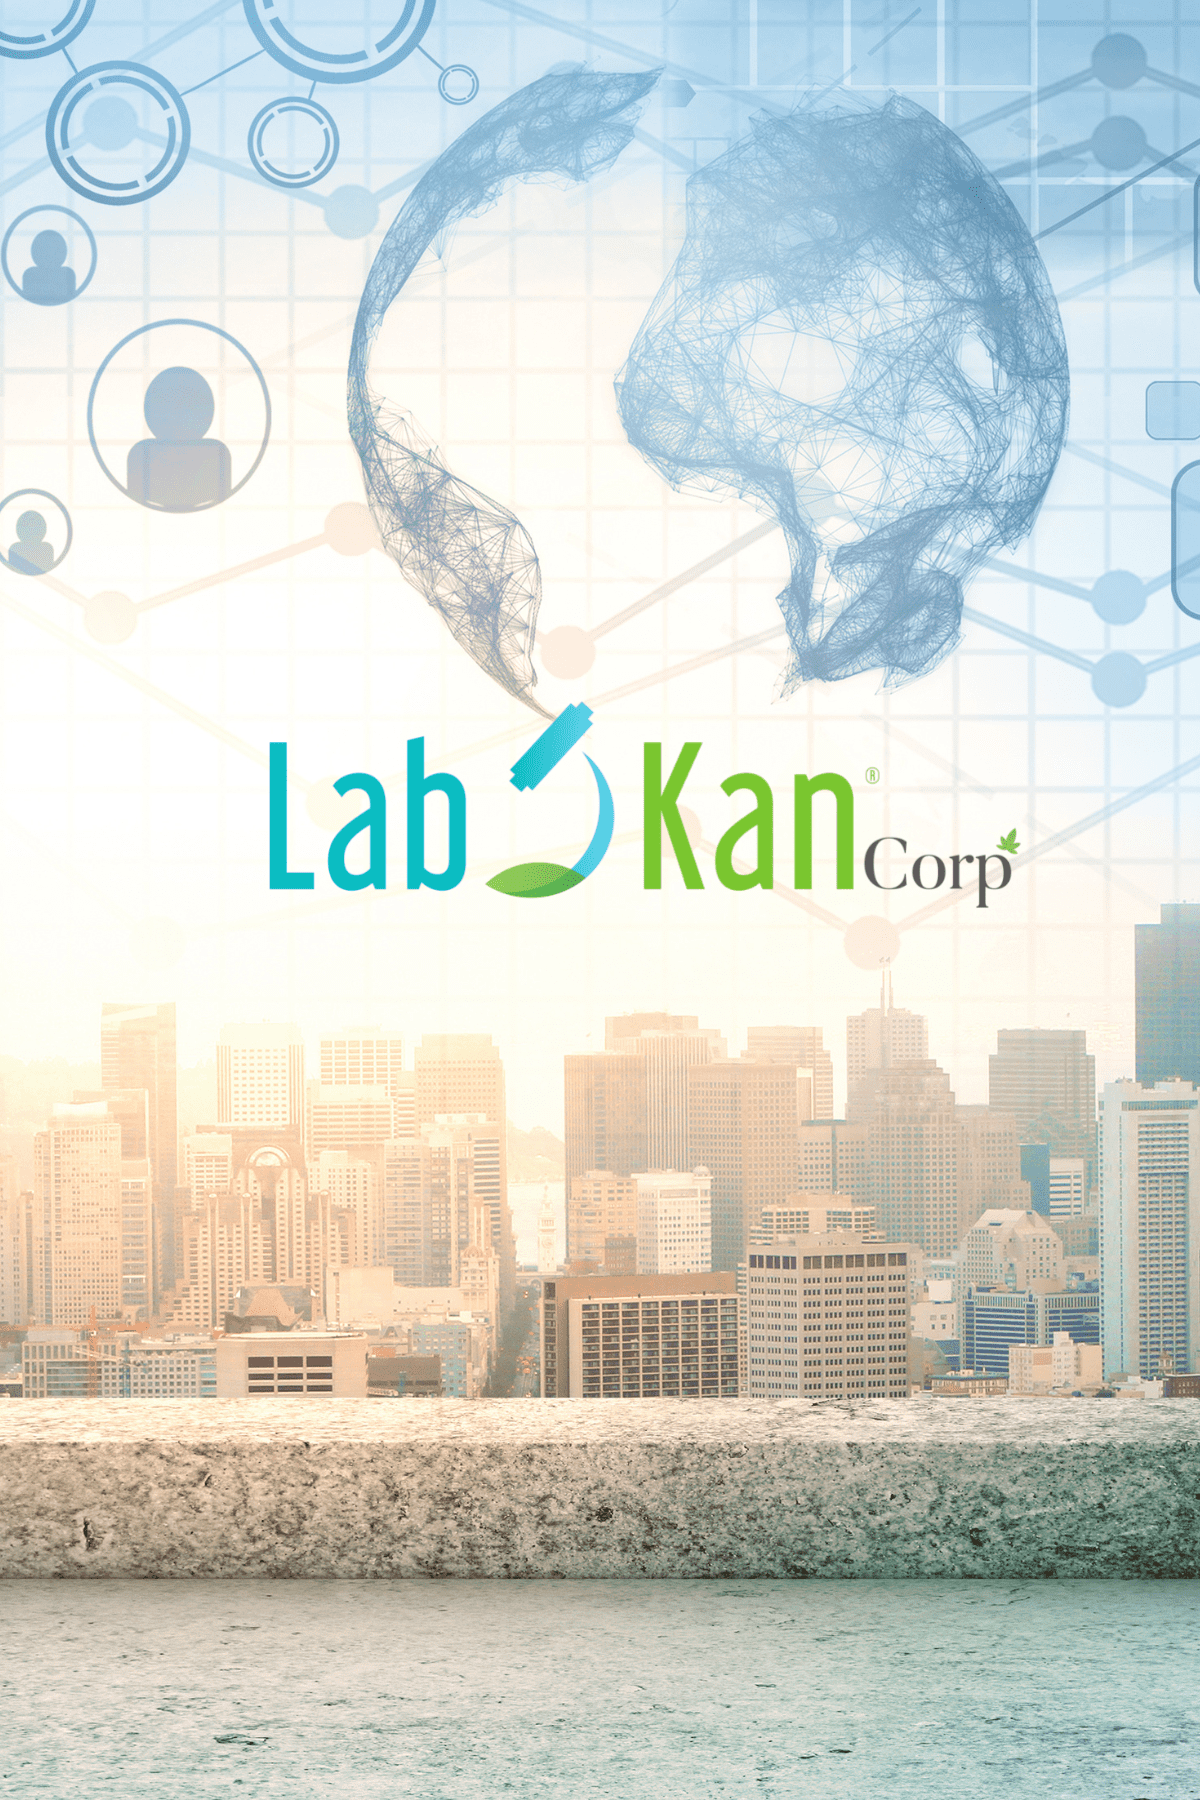 LabKan Corp